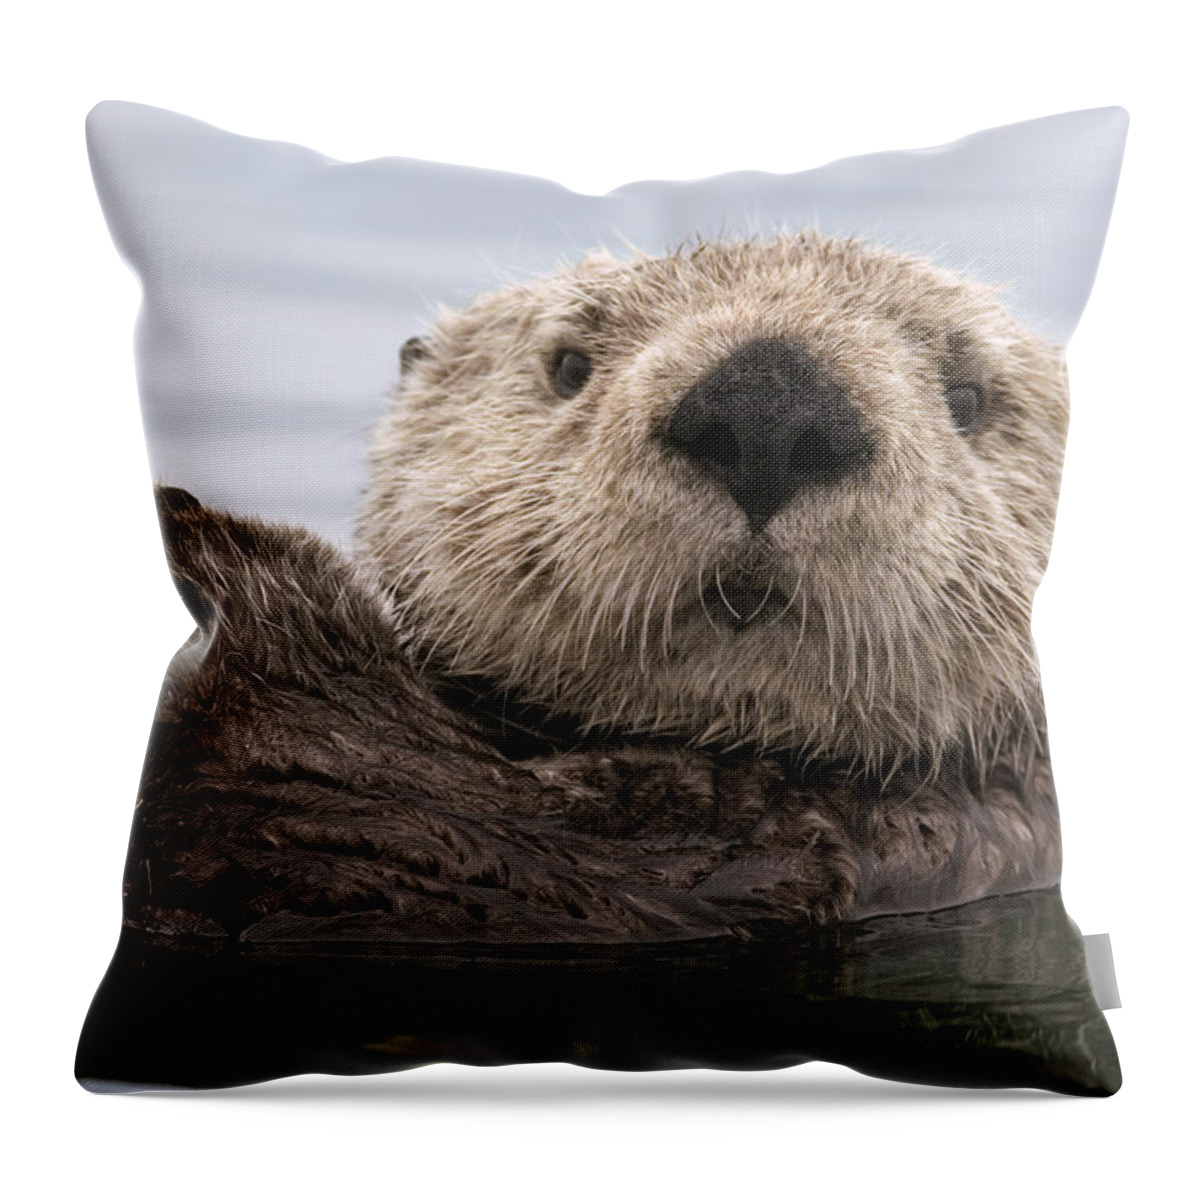 00429873 Throw Pillow featuring the photograph Sea Otter Elkhorn Slough Monterey Bay by Sebastian Kennerknecht